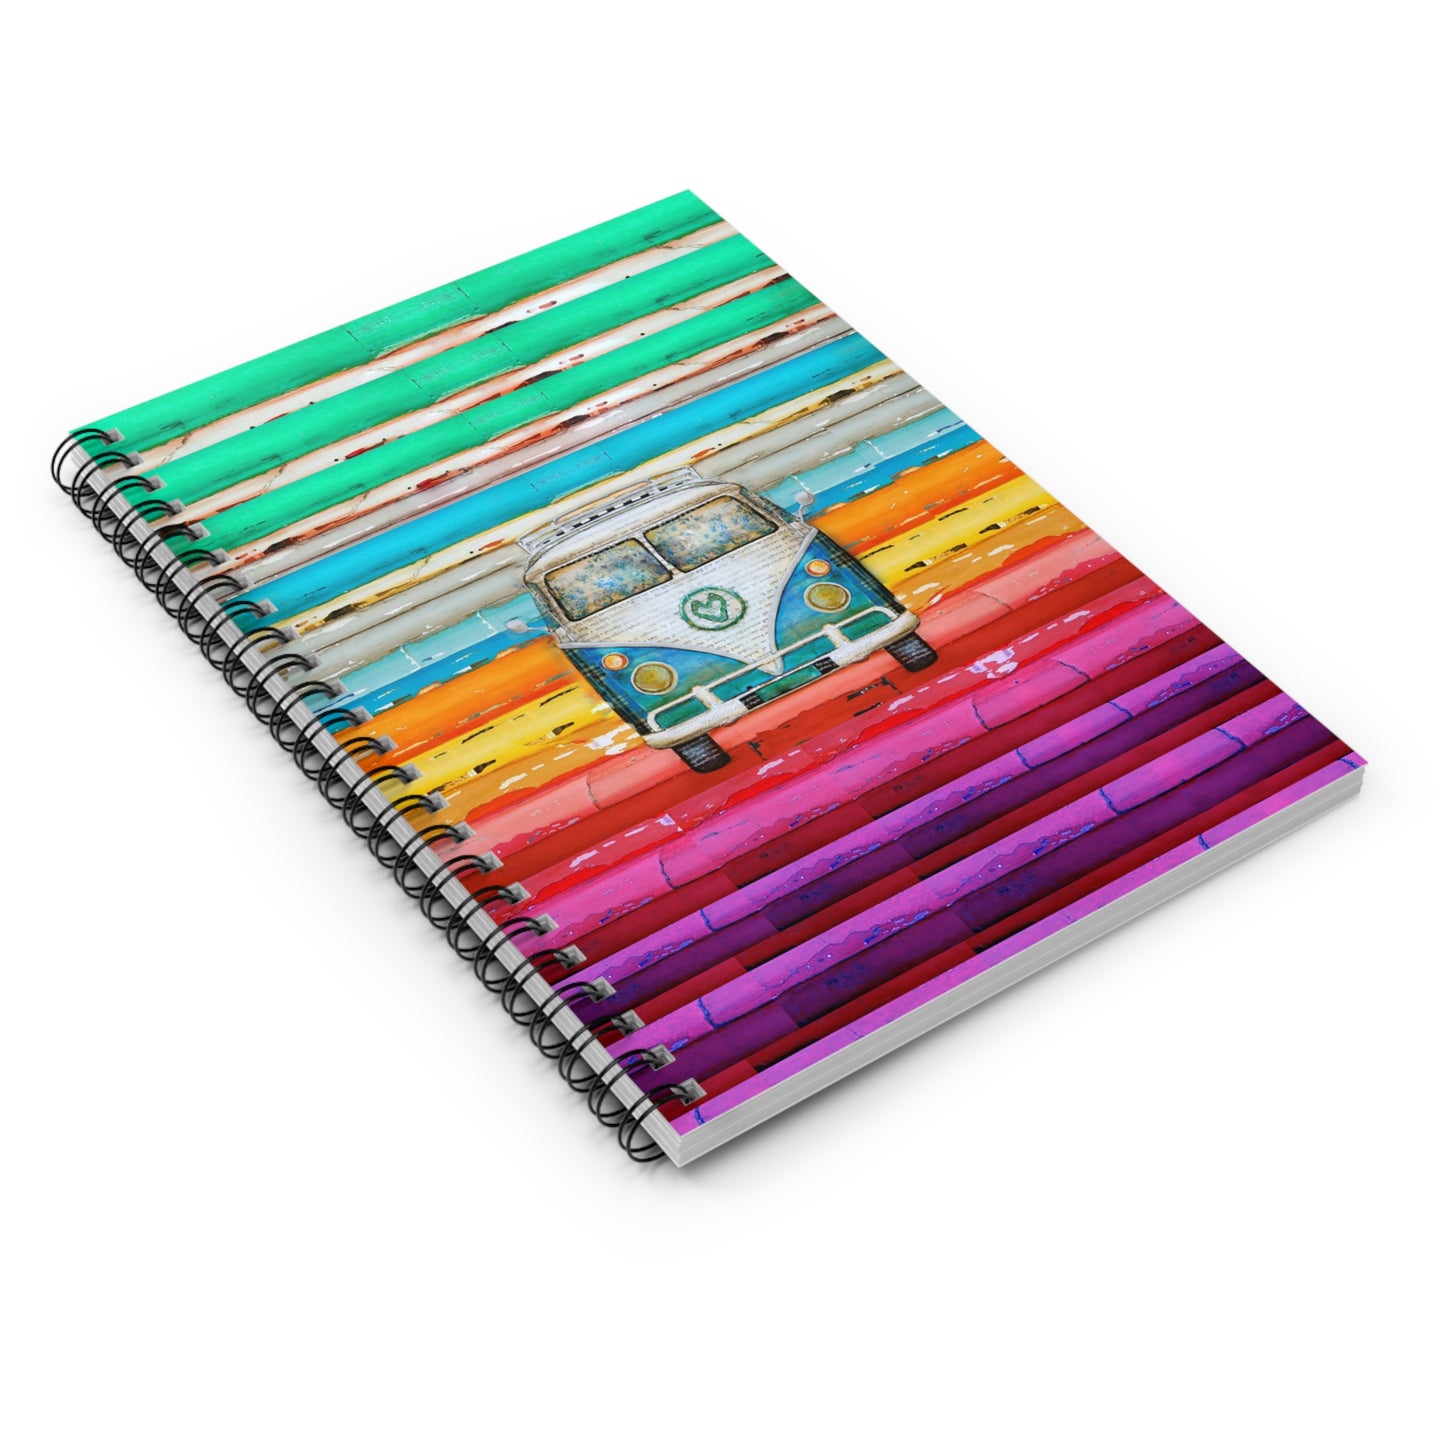 Hippie Van - Spiral Notebook - Ruled Line